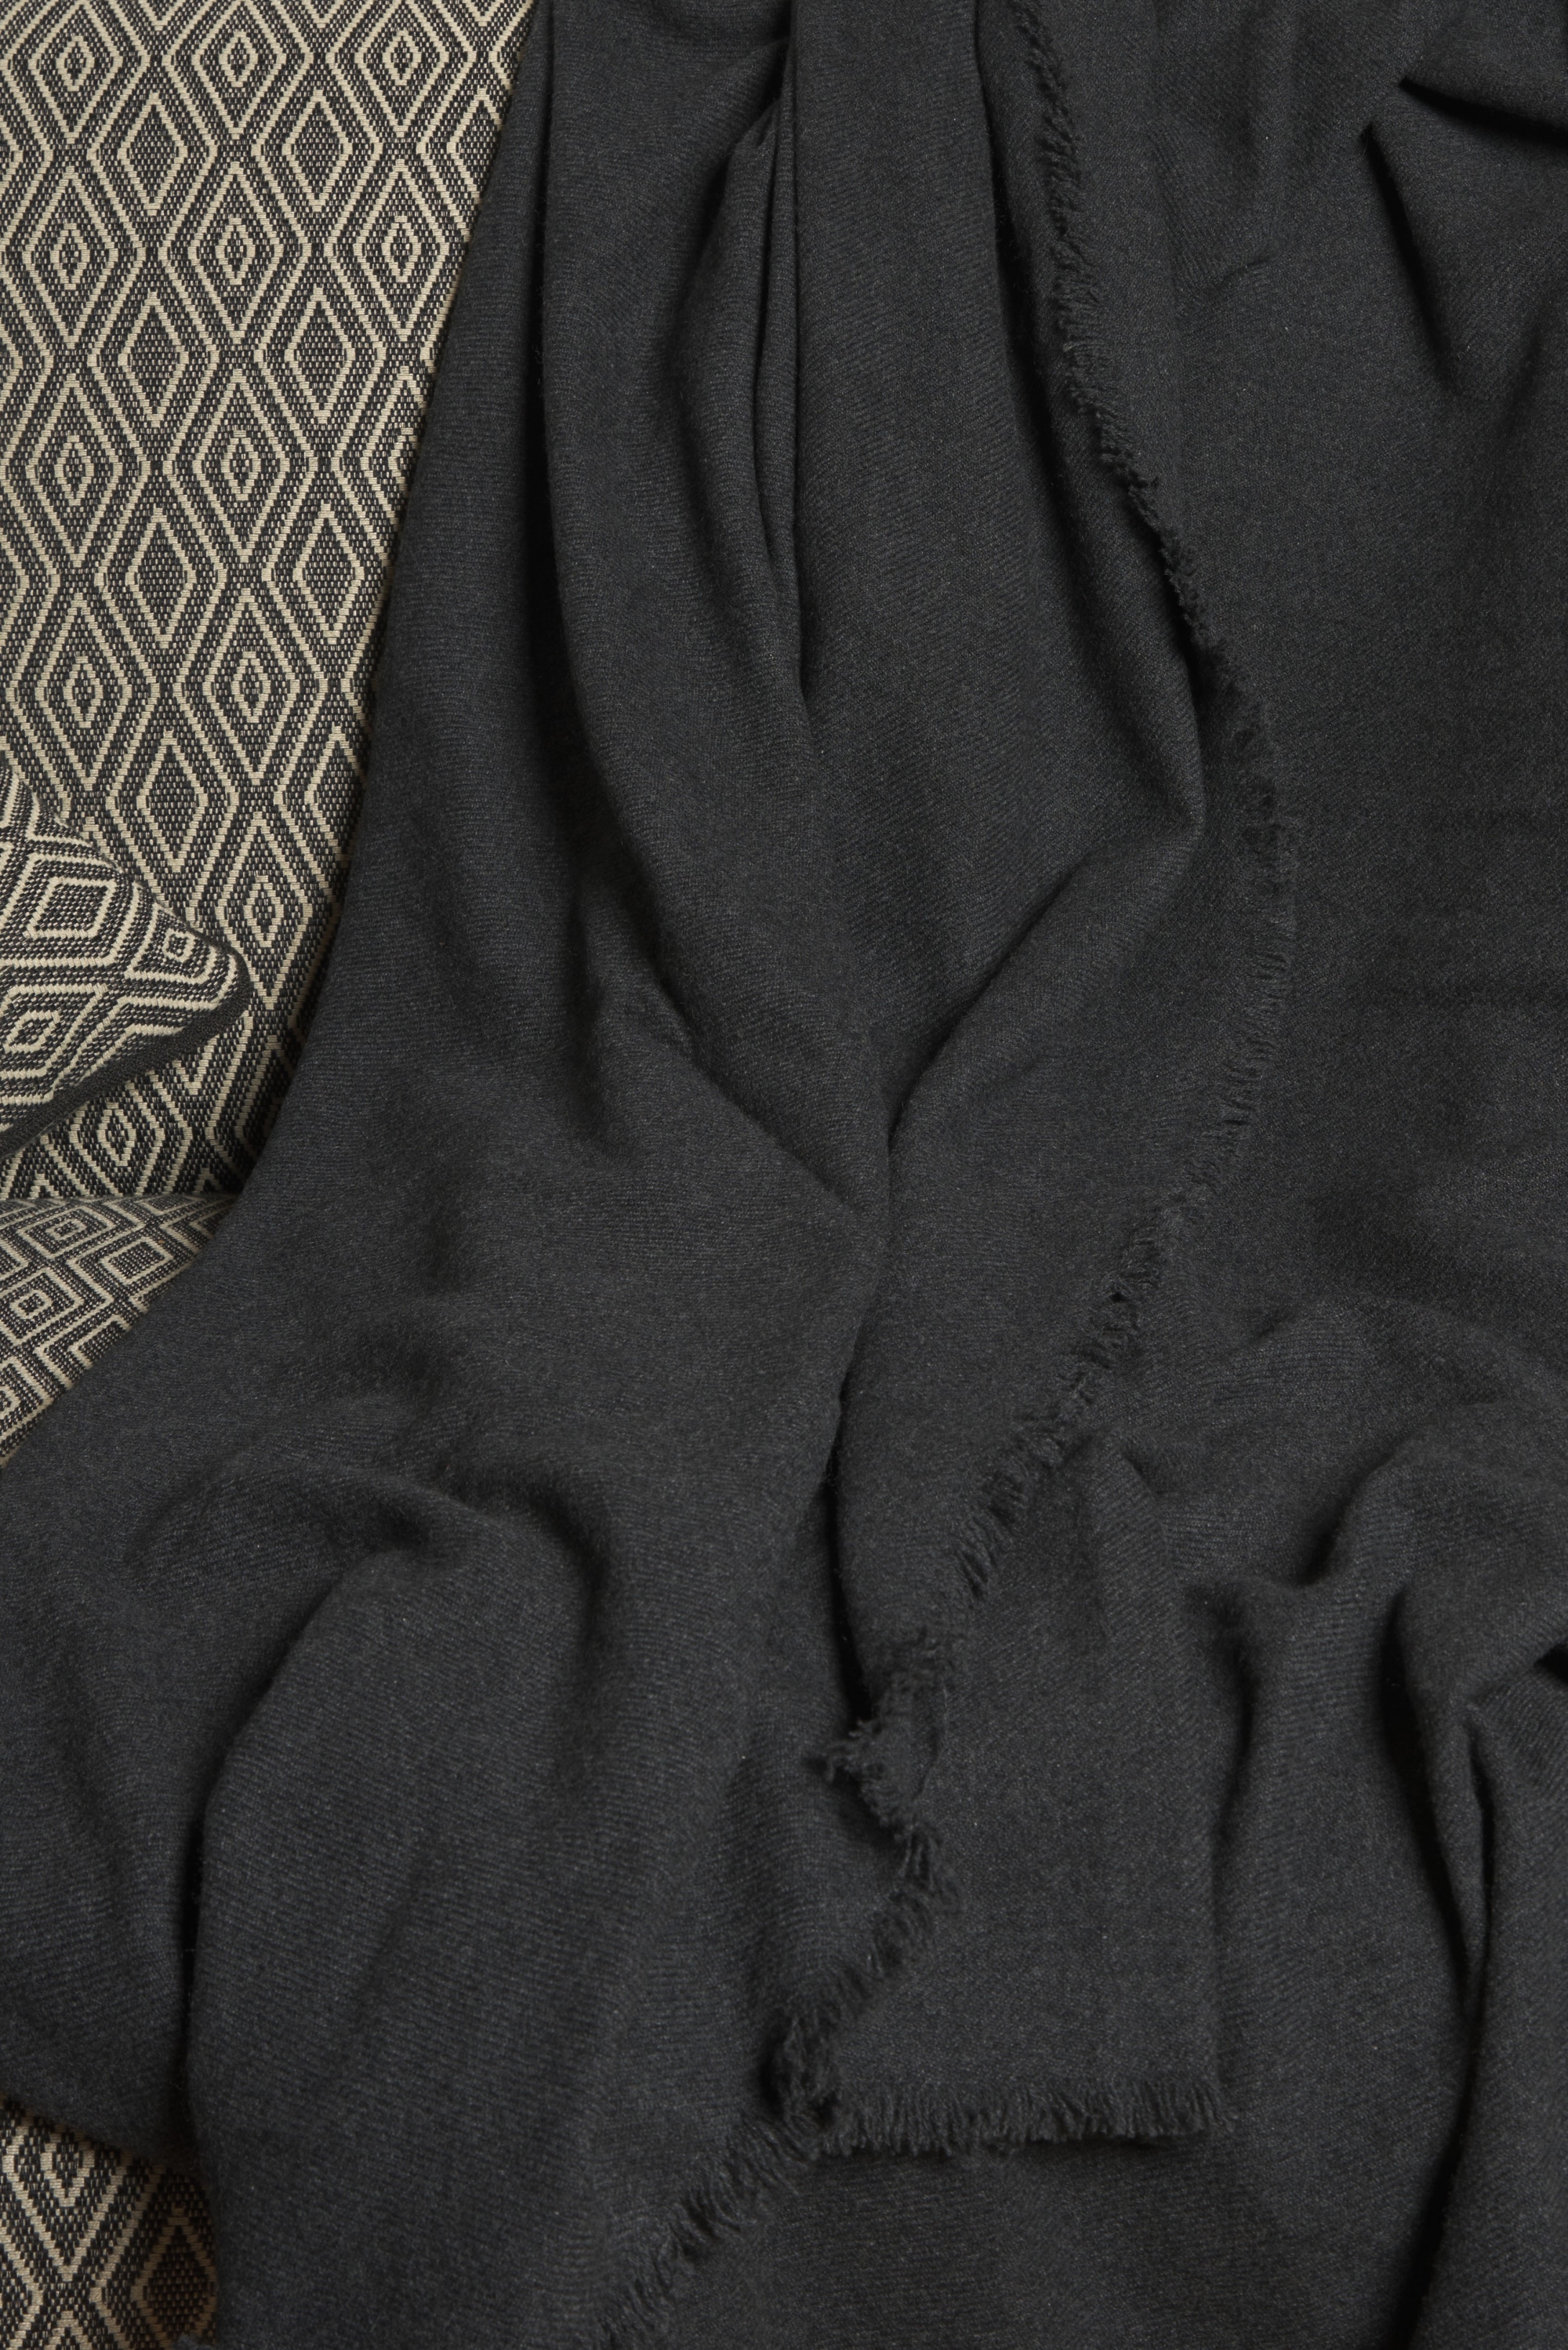 Cashmere cashmere donna toodoo plain s 140 x 200 carbon 140 x 200 cm